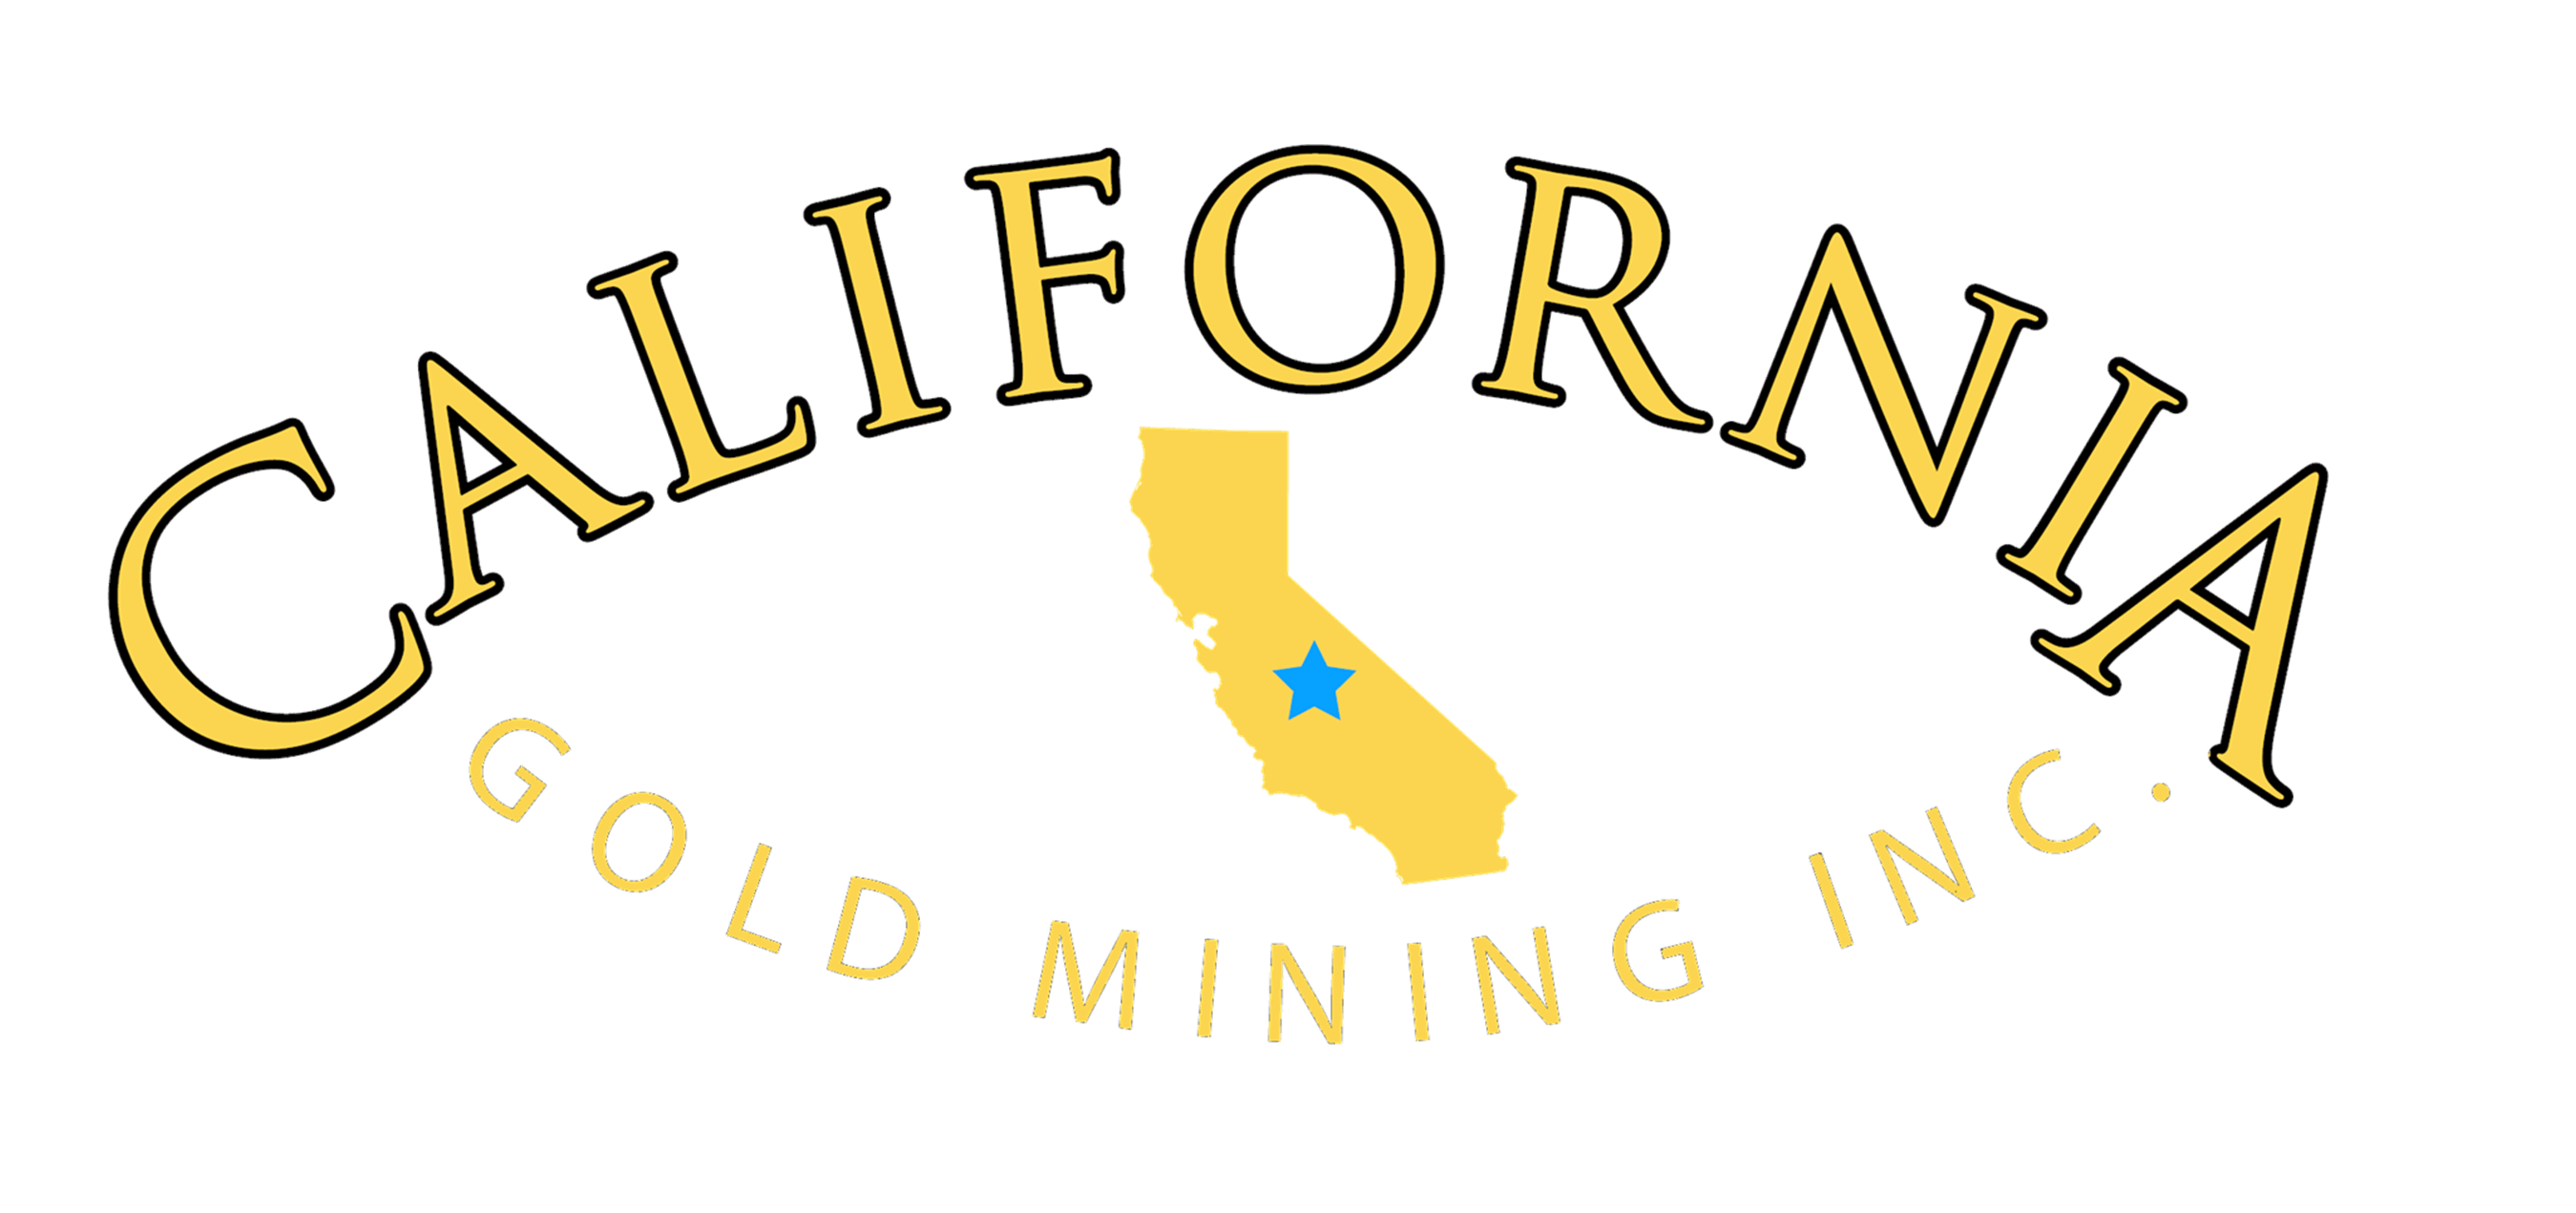 Gold Mining Logo - California Gold Mining Inc.